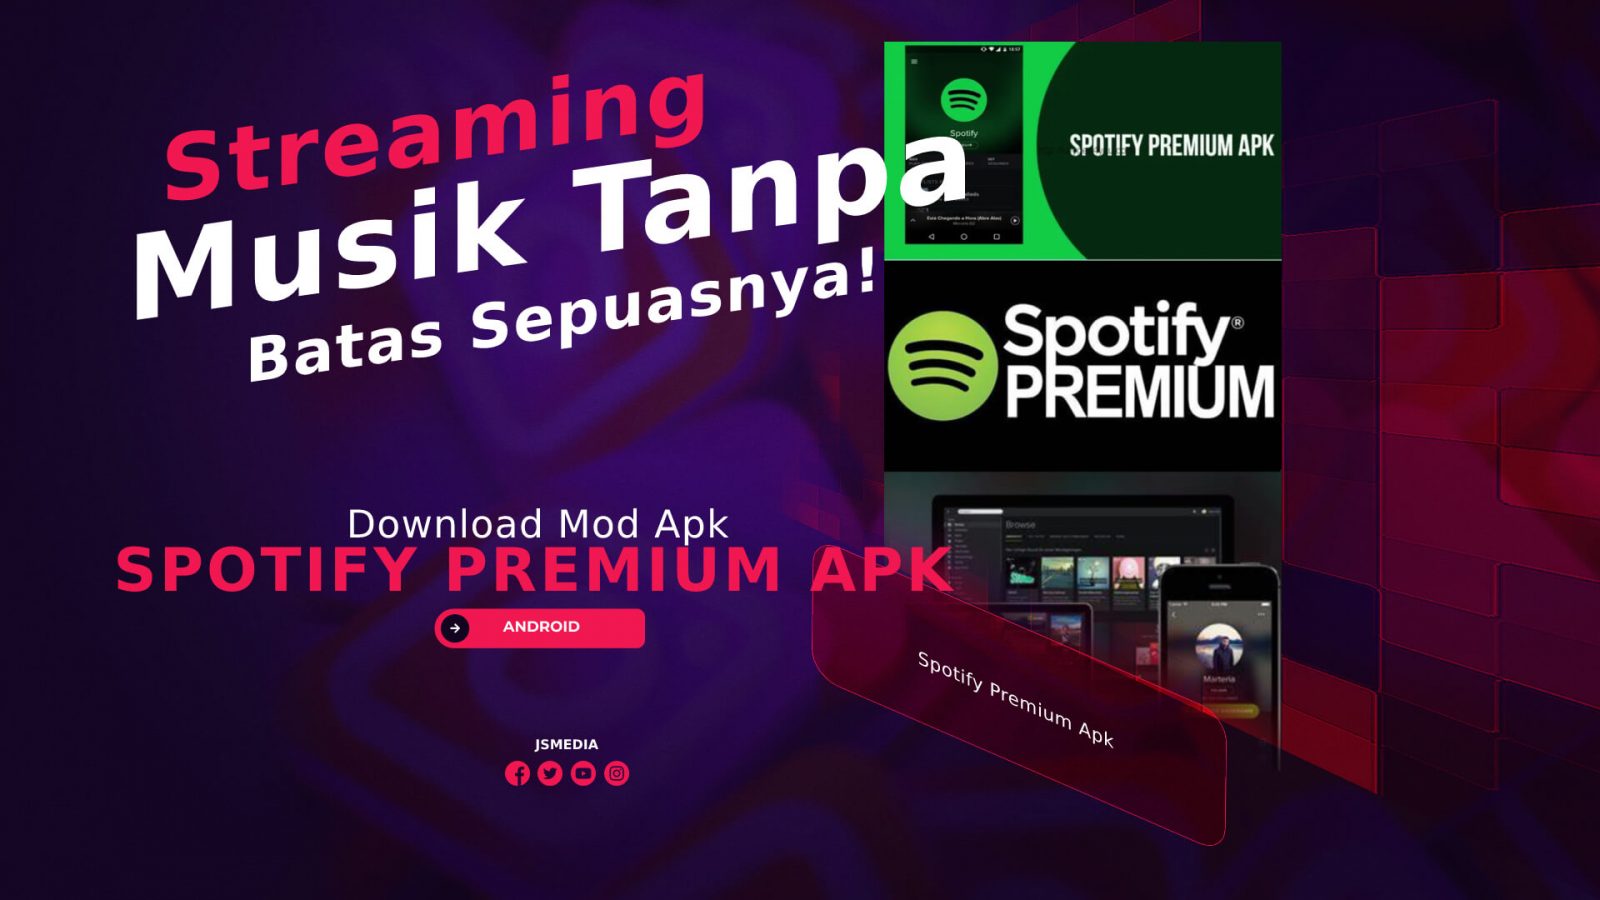 Spotify Premium Mod Apk, Streaming Musik Sepuasnya